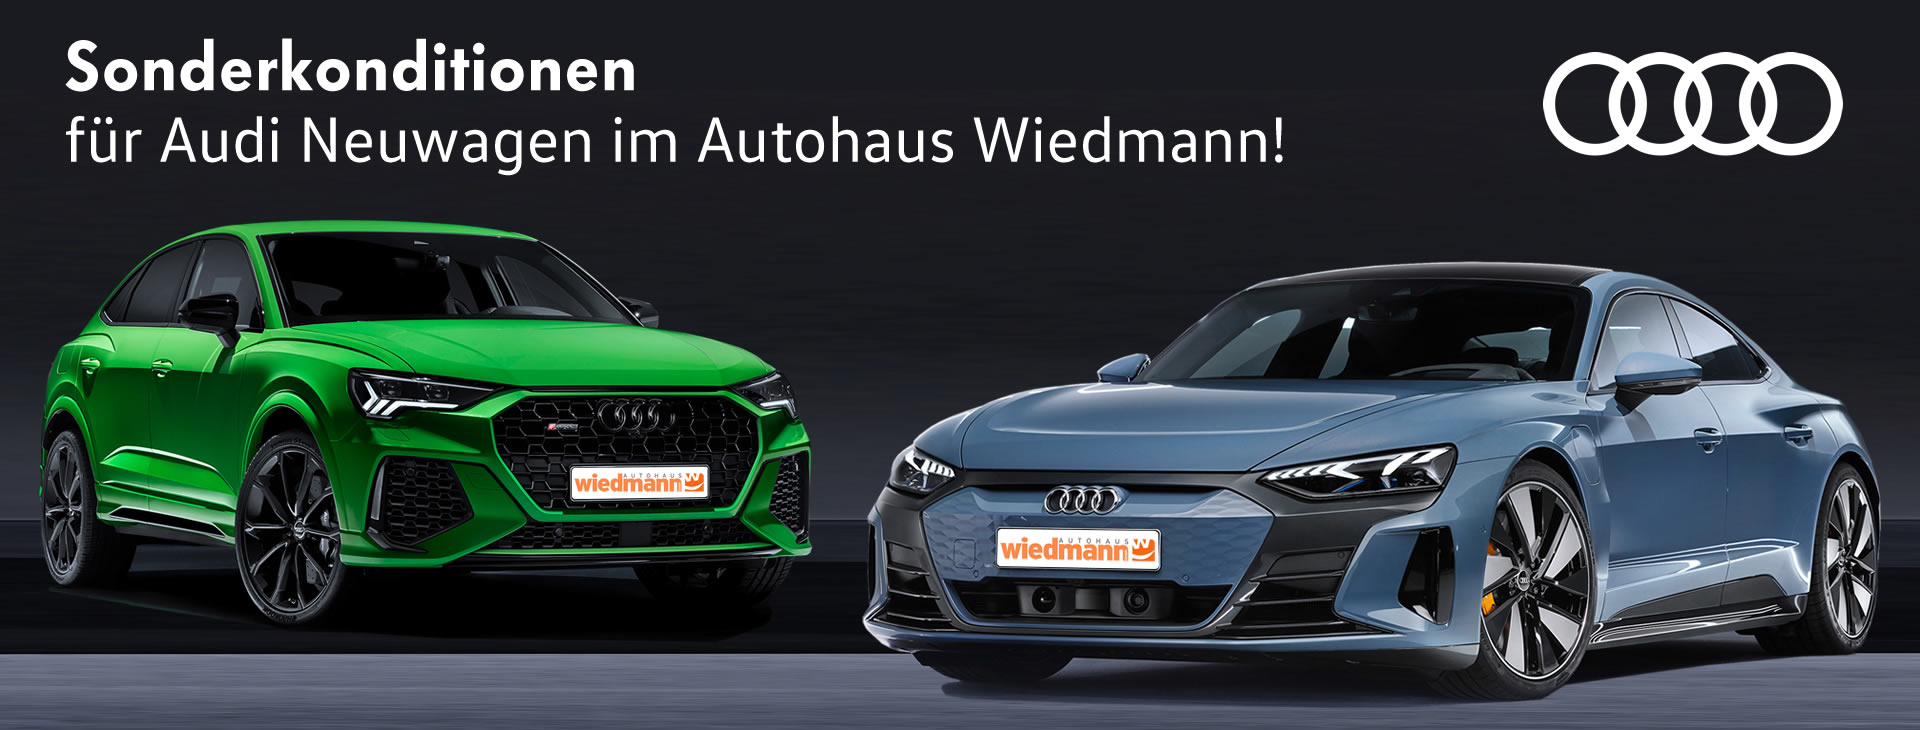 Audi Neuwagen Aktion